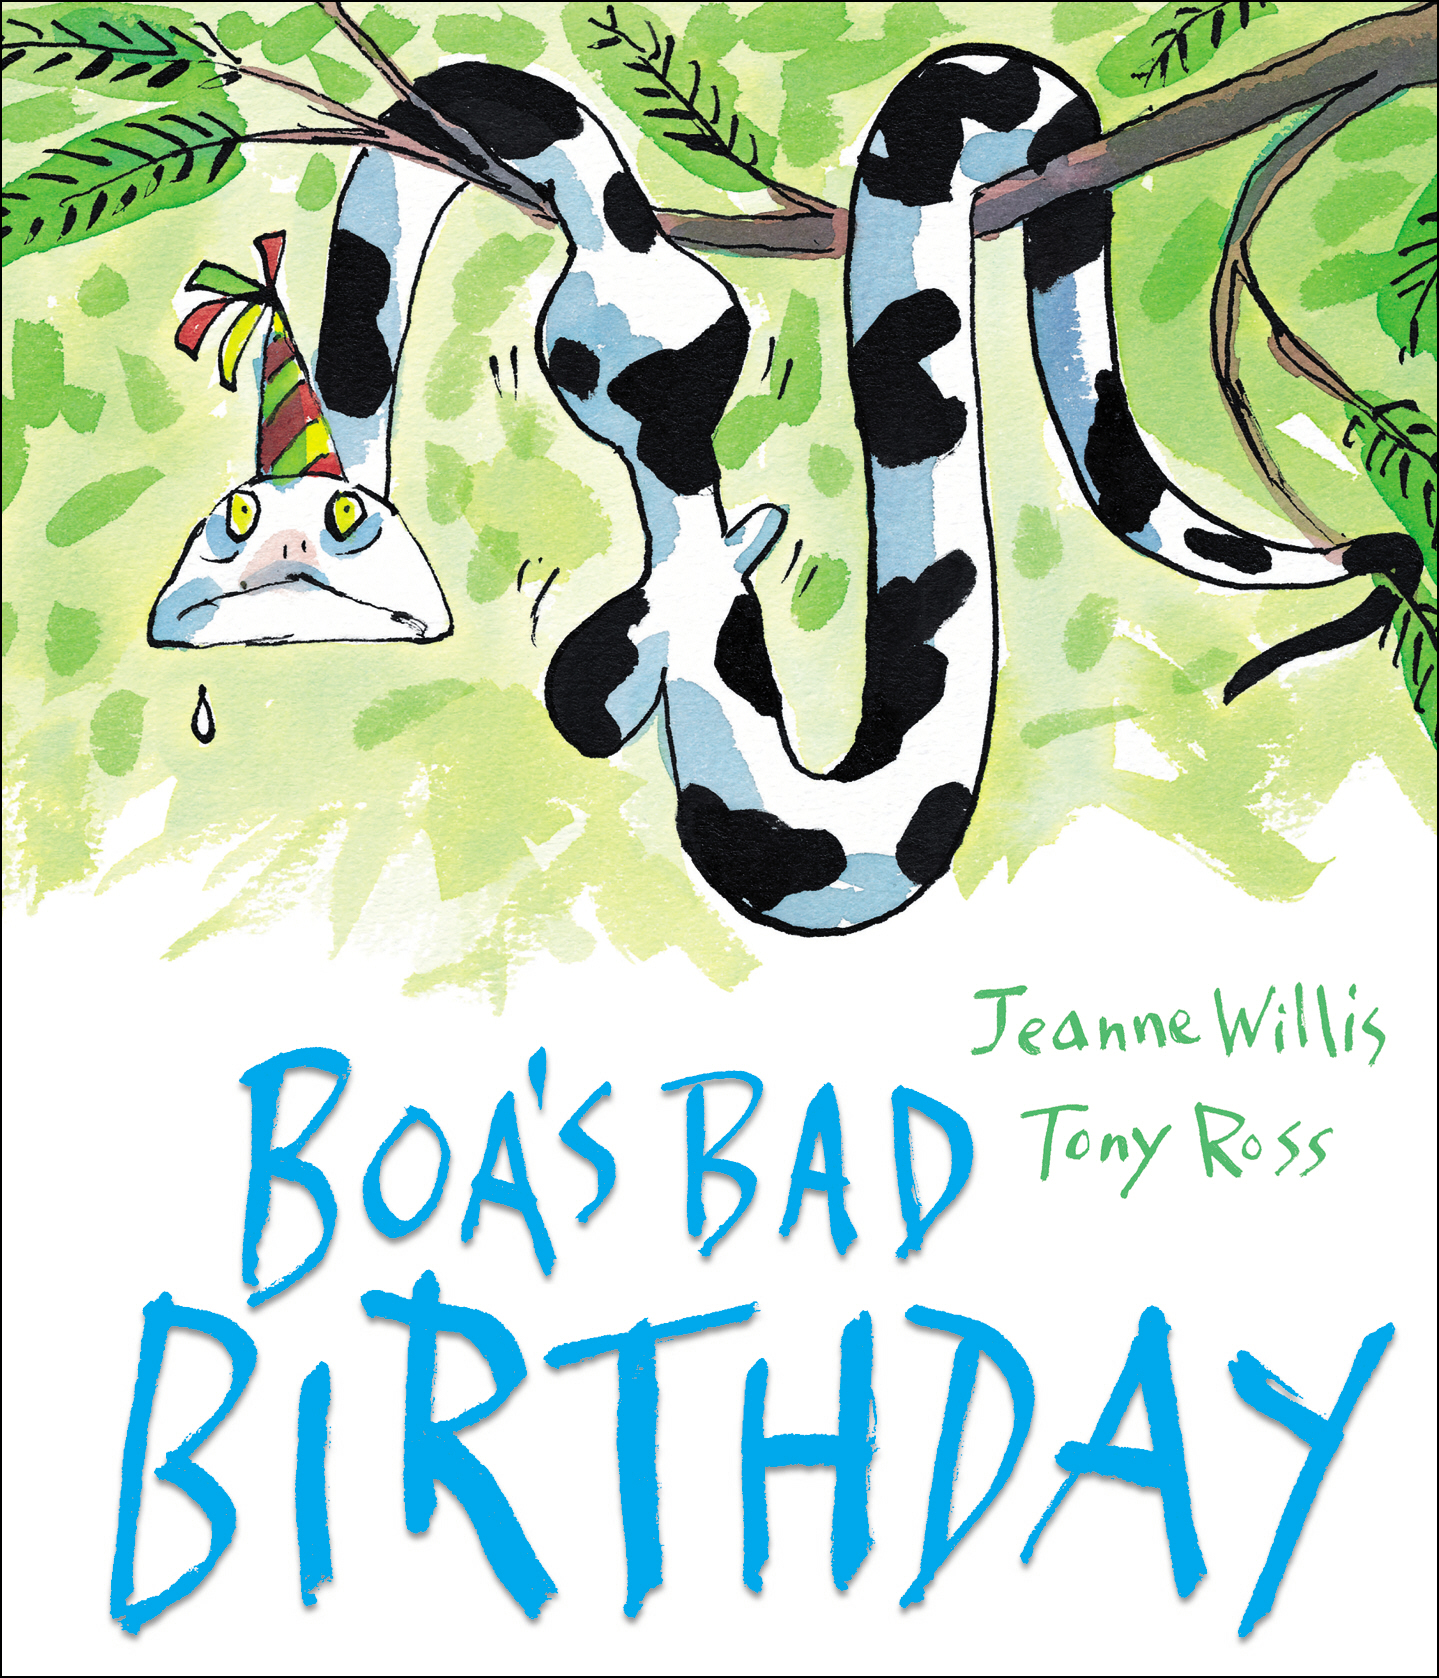 Boa's Bad Birthday